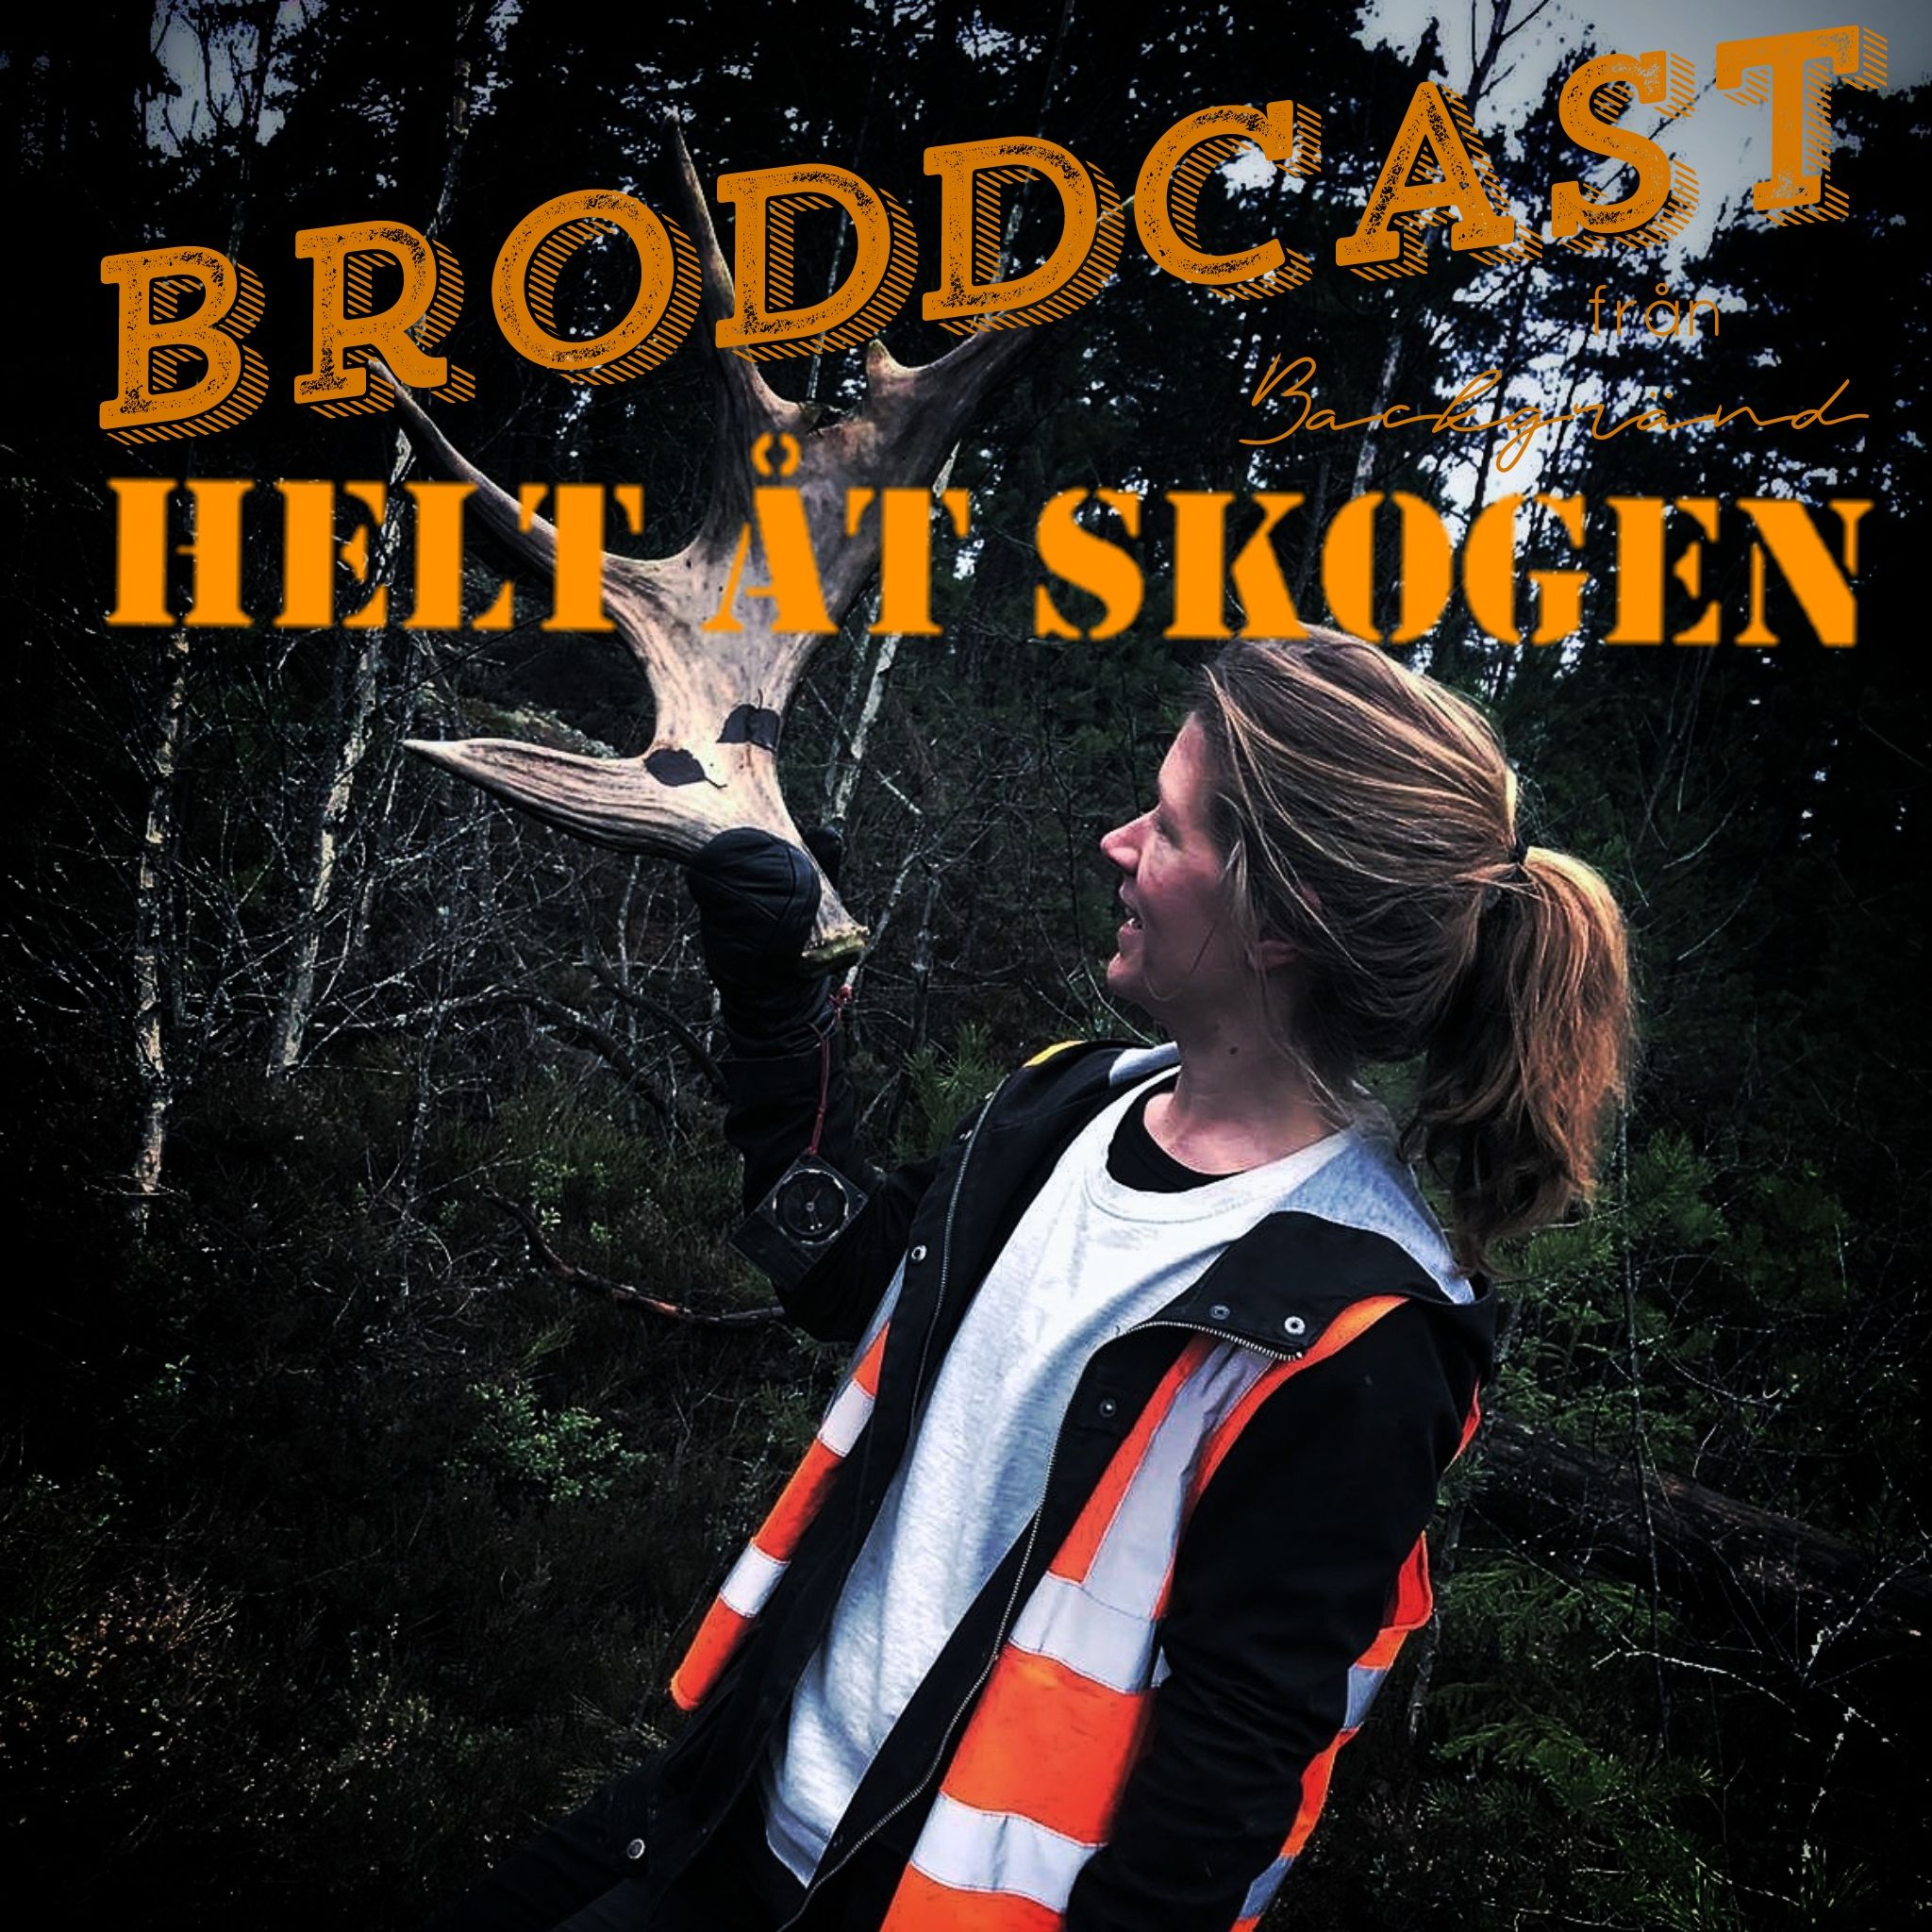 Broddcast#1: Staffan på Starast